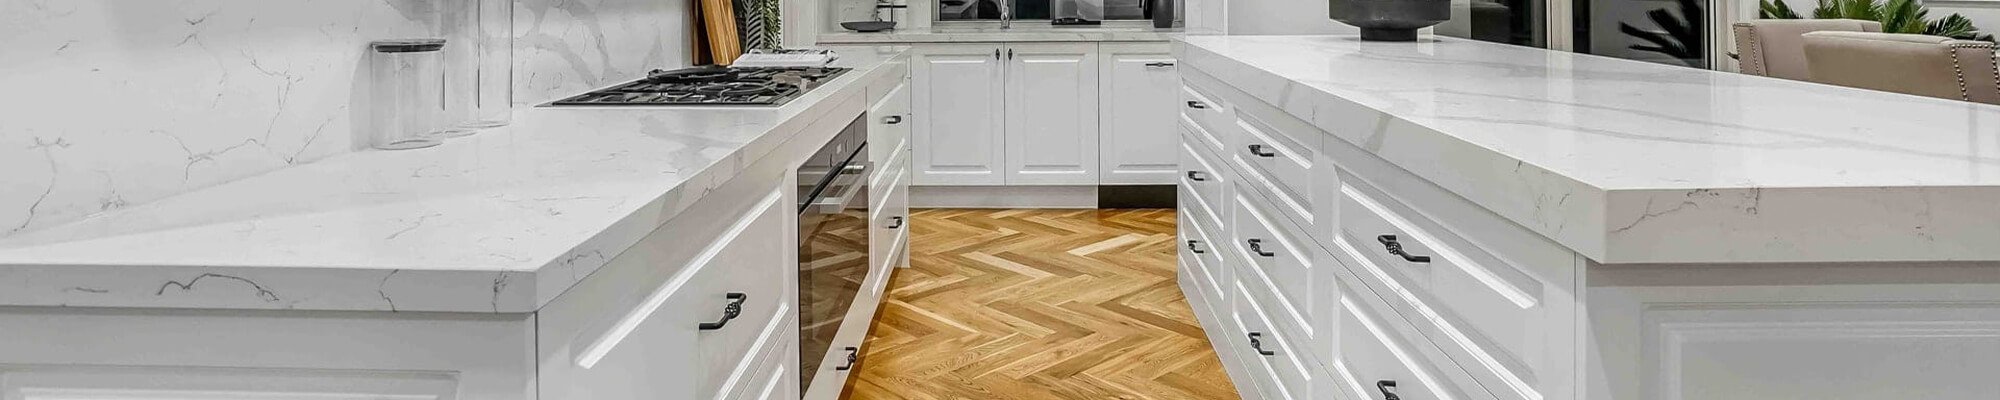 Modern floors in a new kitchen - contact Koehler Floor Coverings in Warren, Ohio